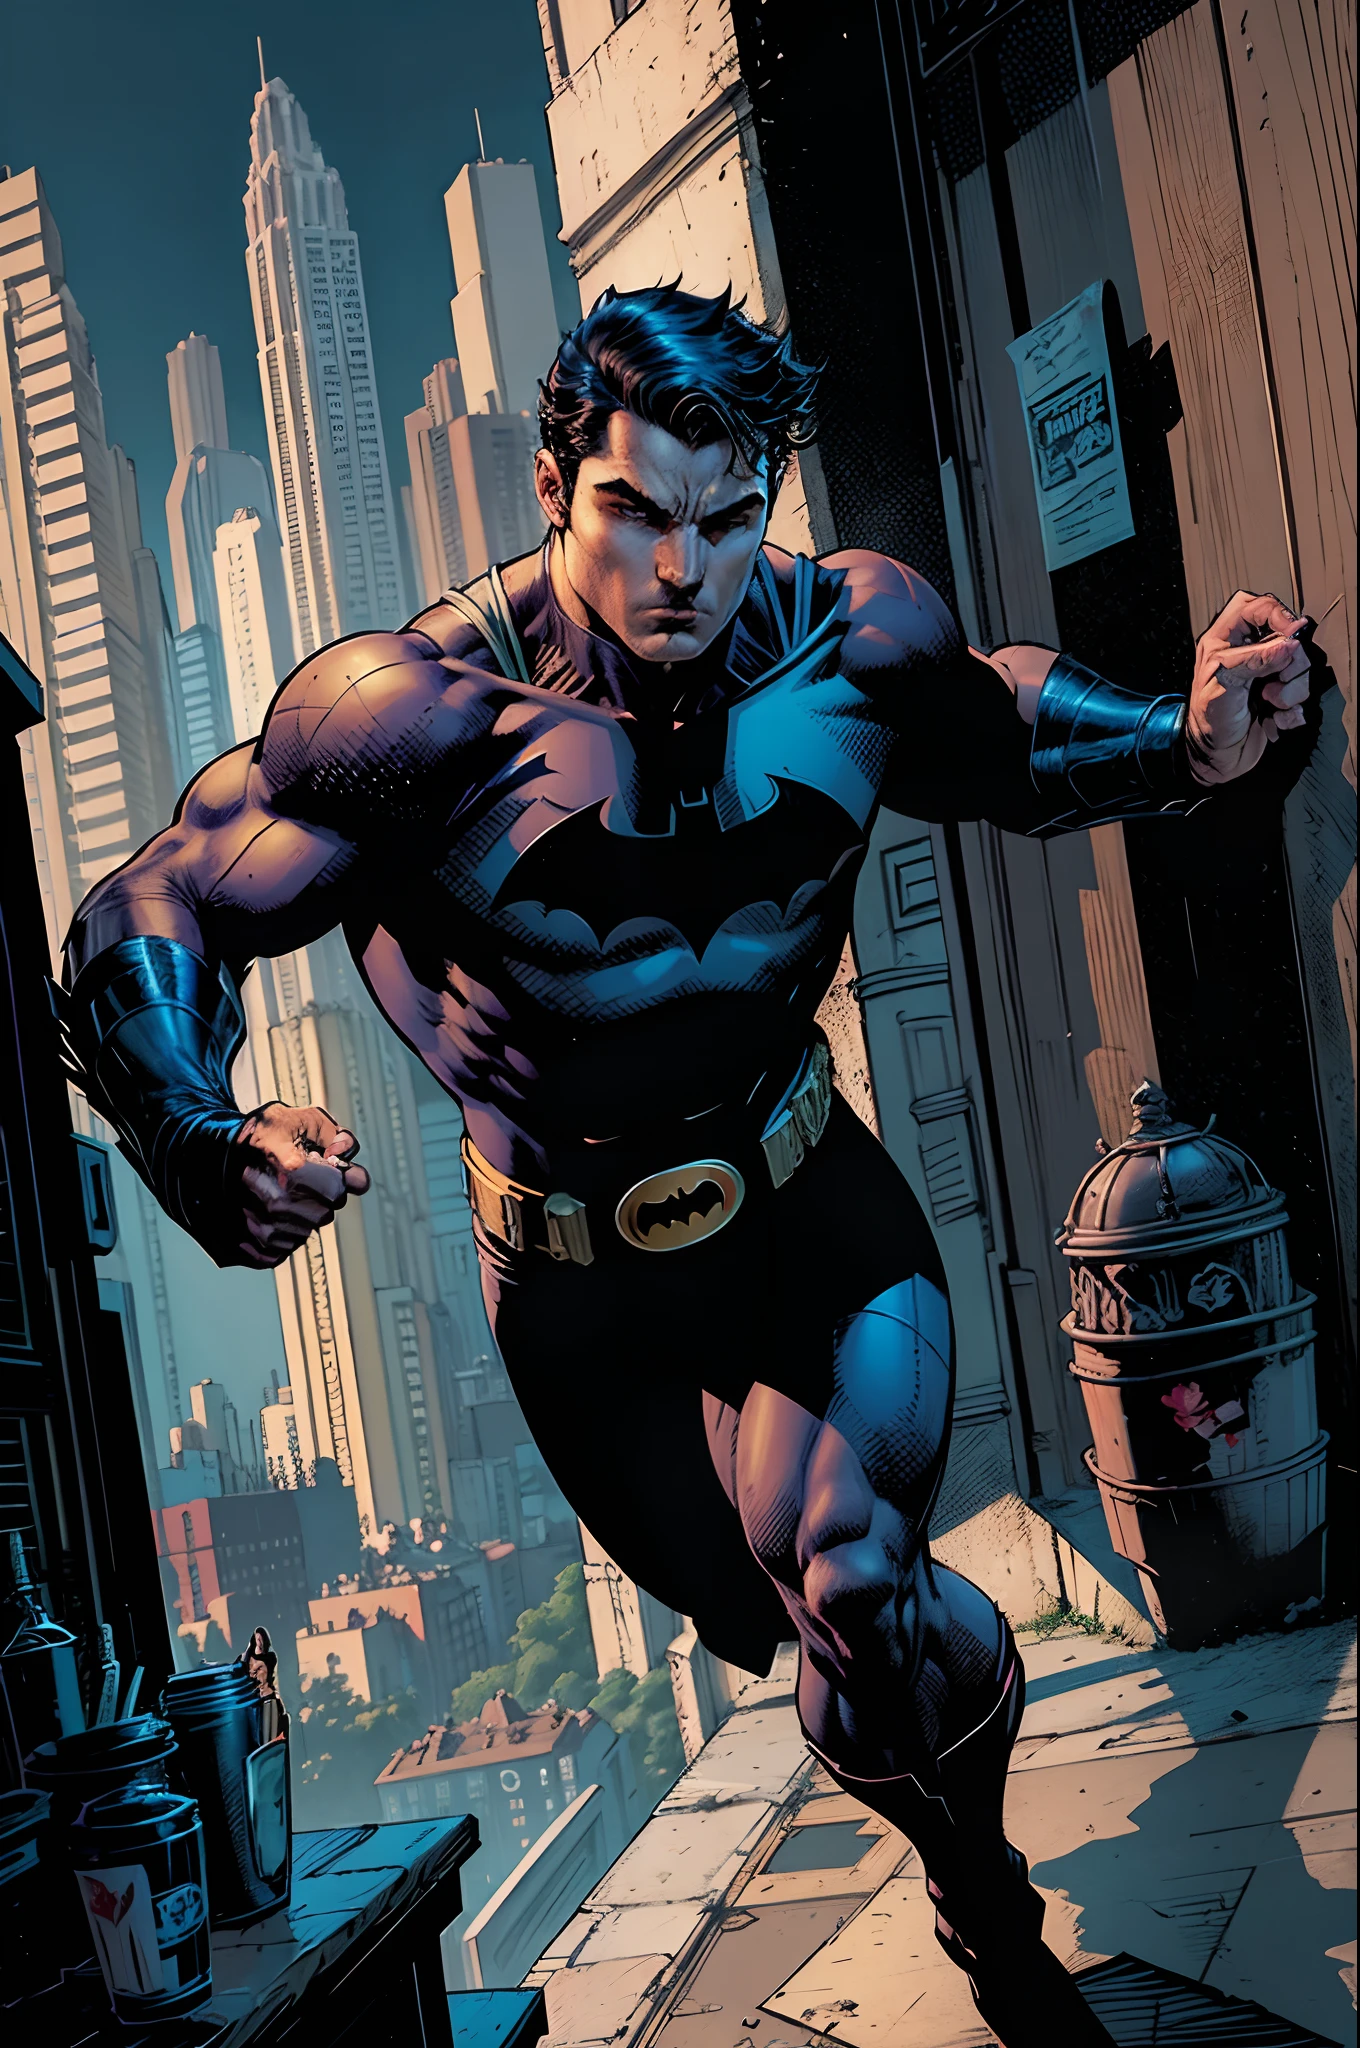 Робин, мальчик-вундеркинд, сын Бэтмена или Брюса Уэйна, мятежник, хитрость, сильный, jnlclinado, чтобы восстановить справедливость, любитель боевых искусств, таких как джиу-джитсу, айкидо, Кунг-фу и другие., Стиль рисования DC COMICS, Темный город.